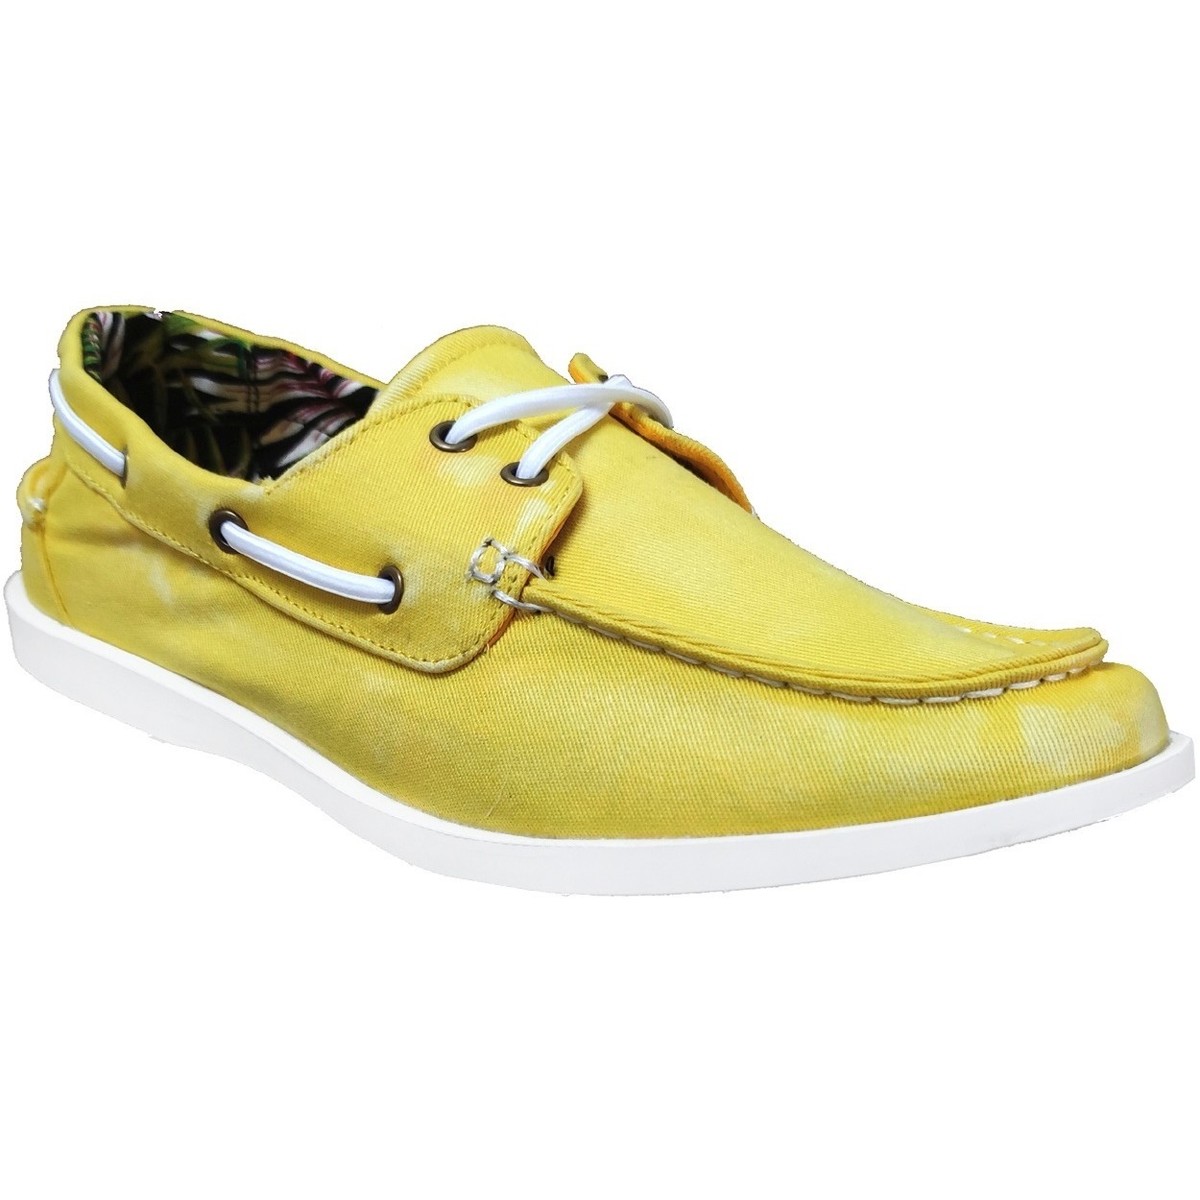 Boat shoes Kdopa Bowie